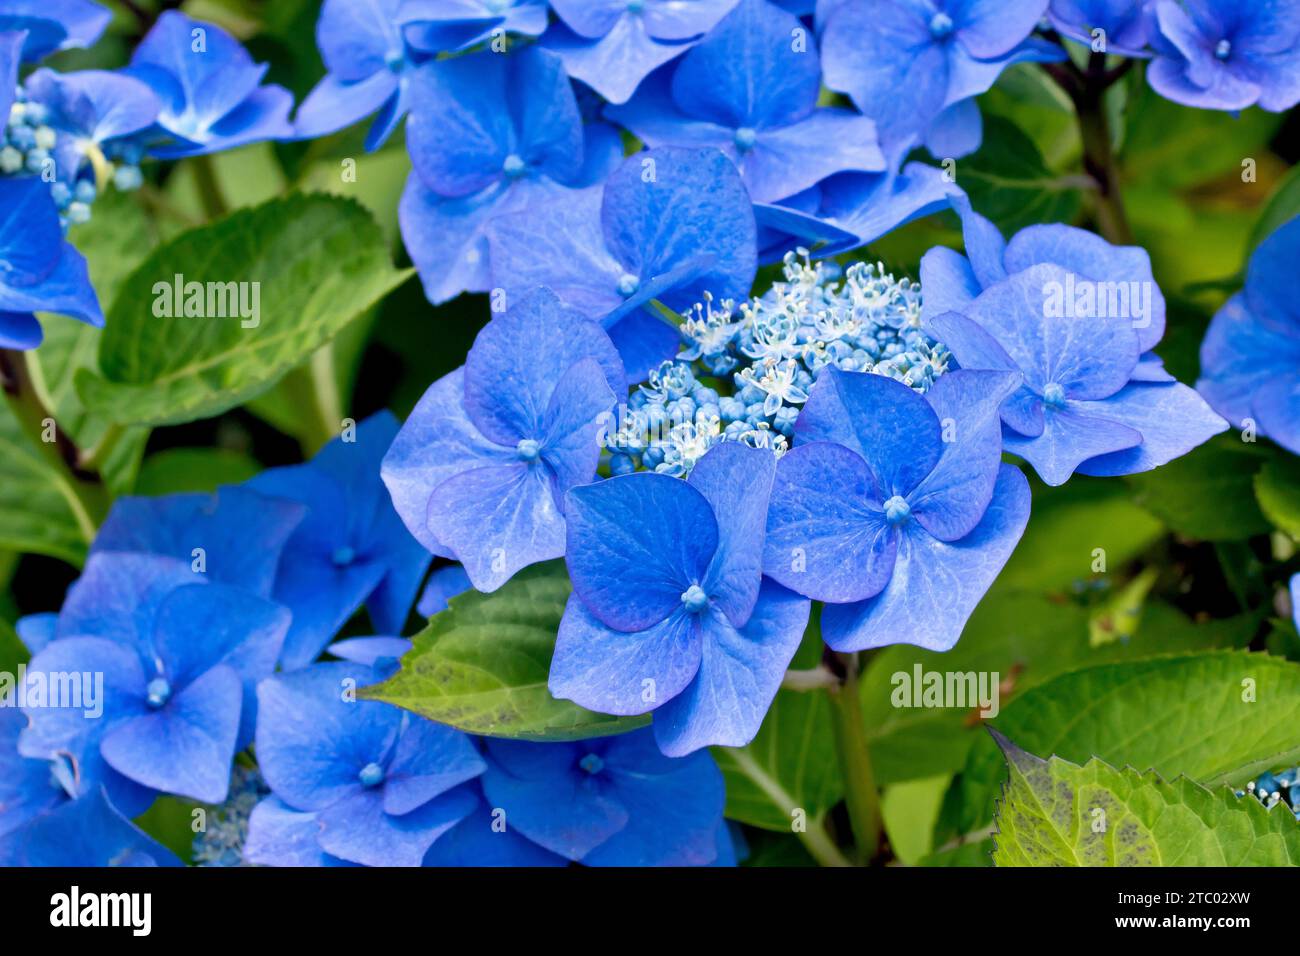 Blaue Spitzenkappe Hydrangea, Nahaufnahme mit Fokus auf einen einzelnen Blumenkopf des Strauchs, der die großen blauen äußeren Blüten und kleineren inneren Blüten zeigt. Stockfoto